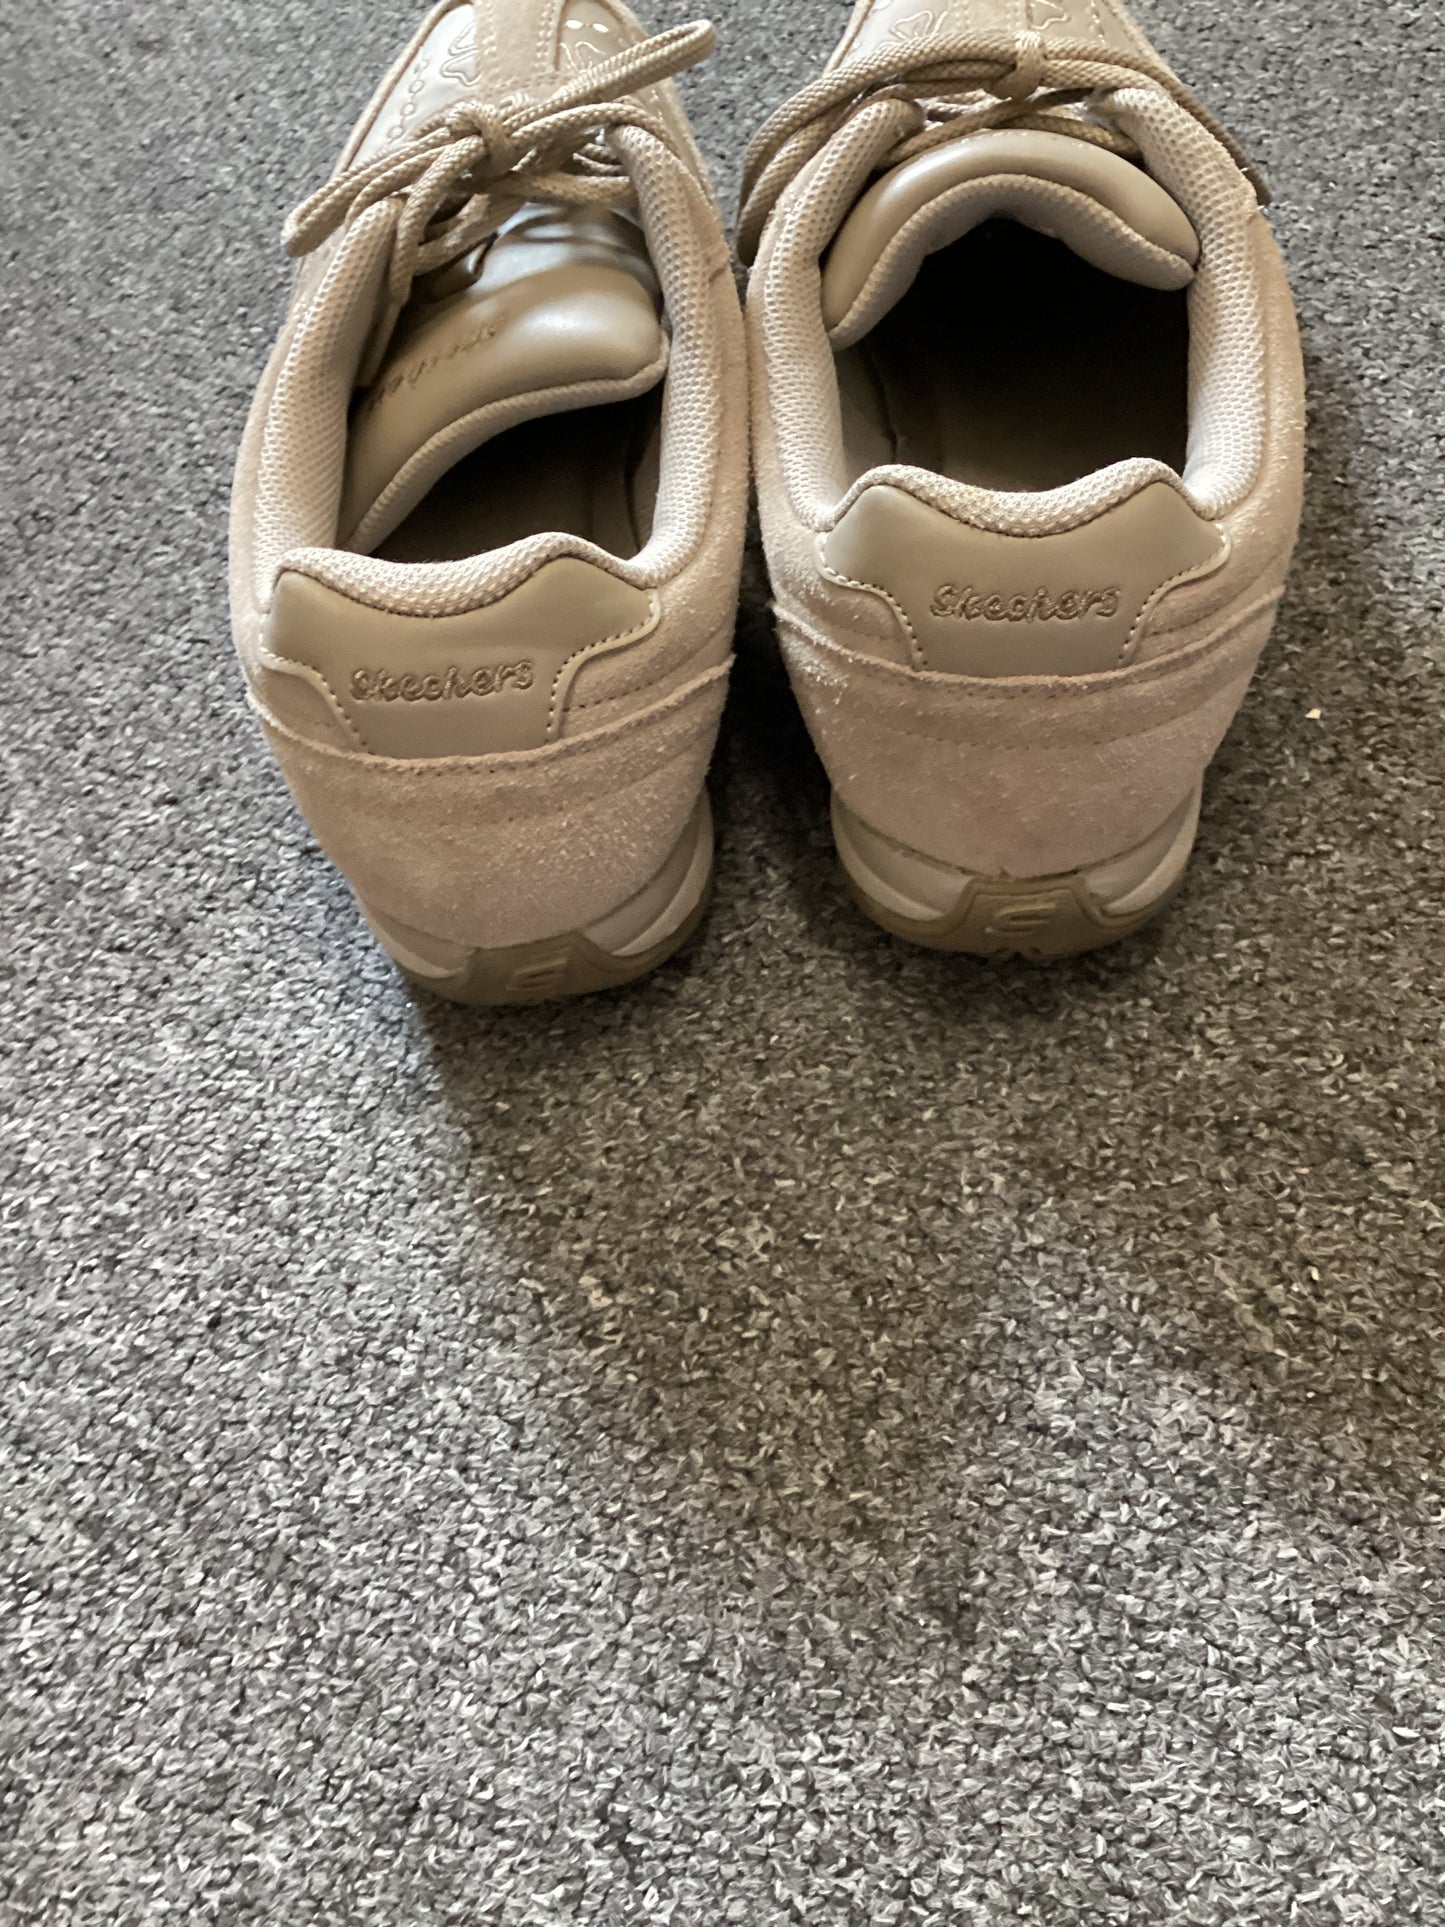 Skechers Beige shoes size 7